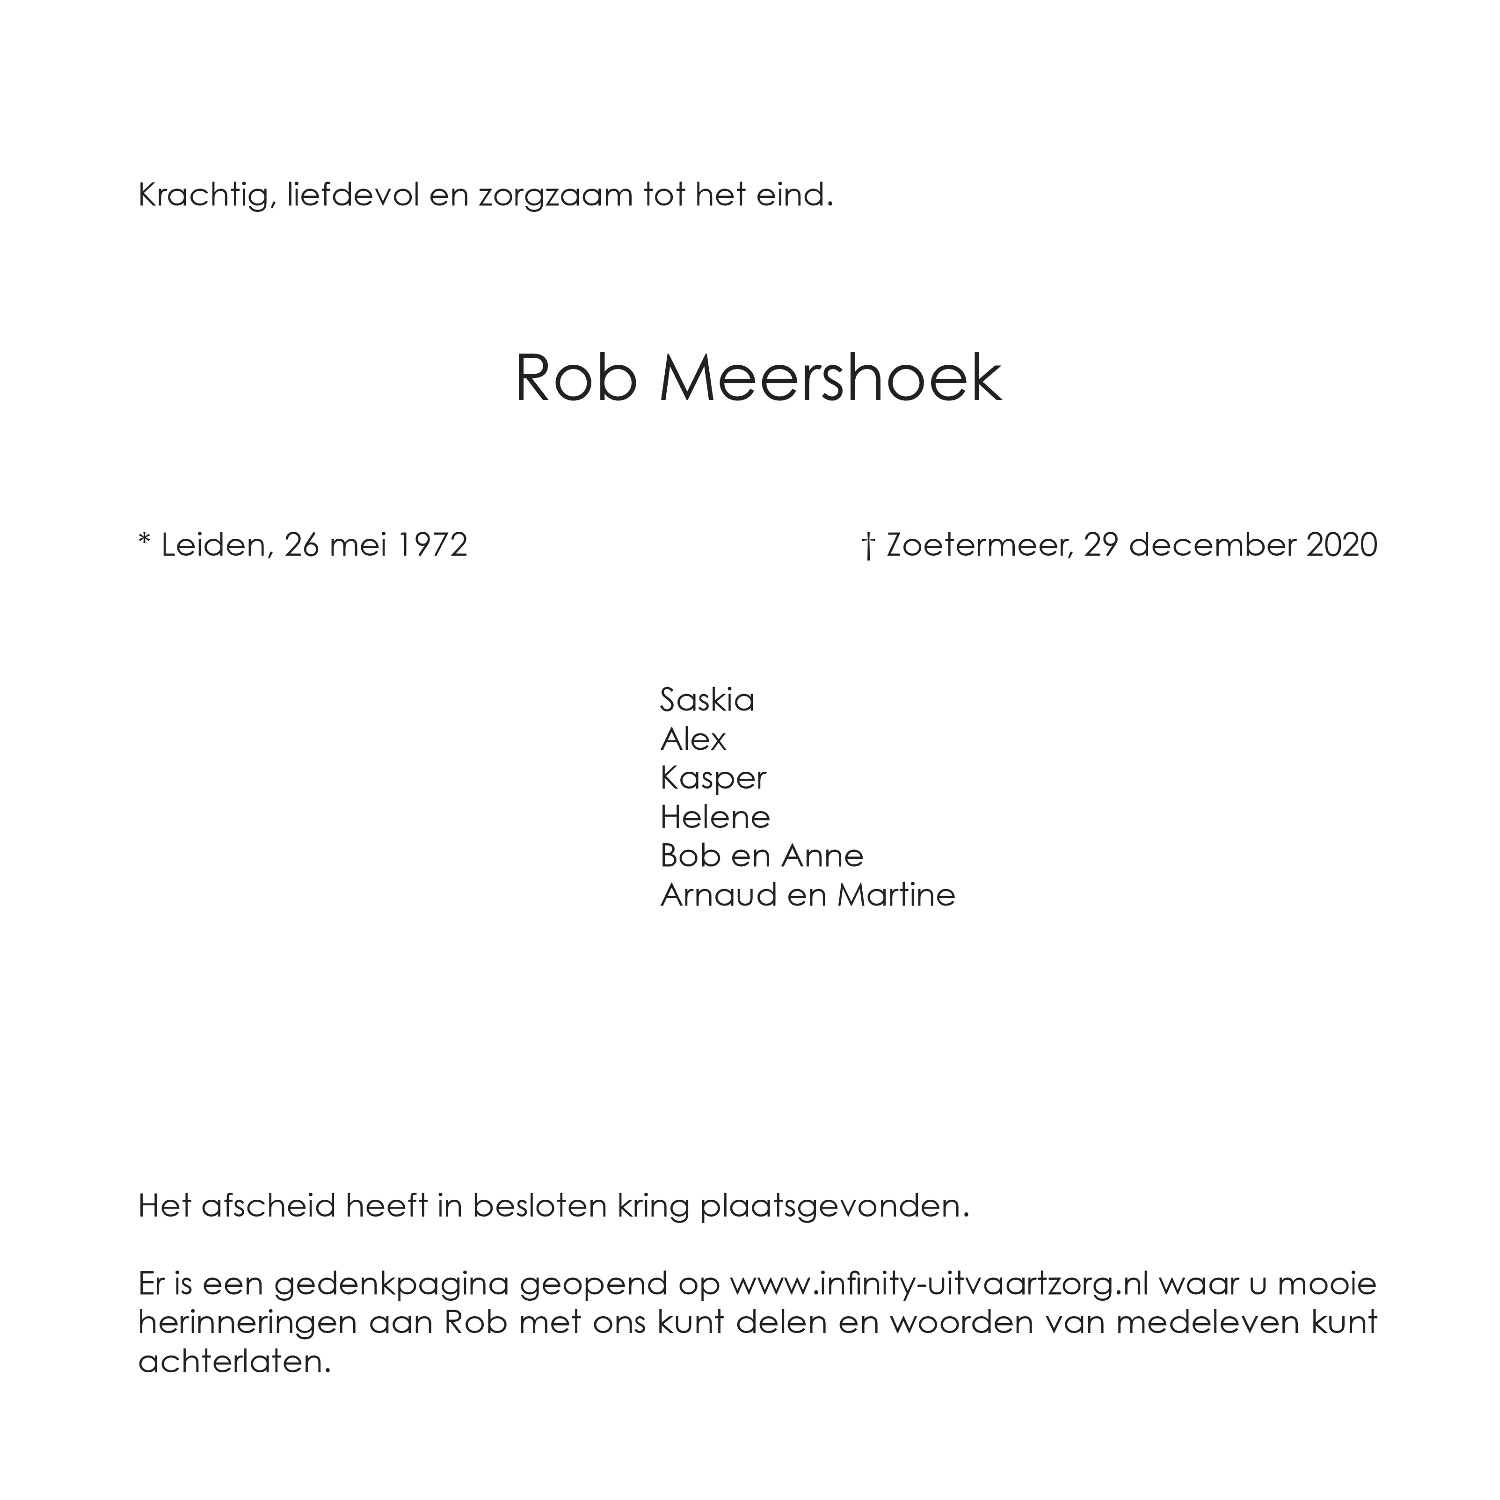 Rob Meershoek, rouwkaart binnenkant rechts